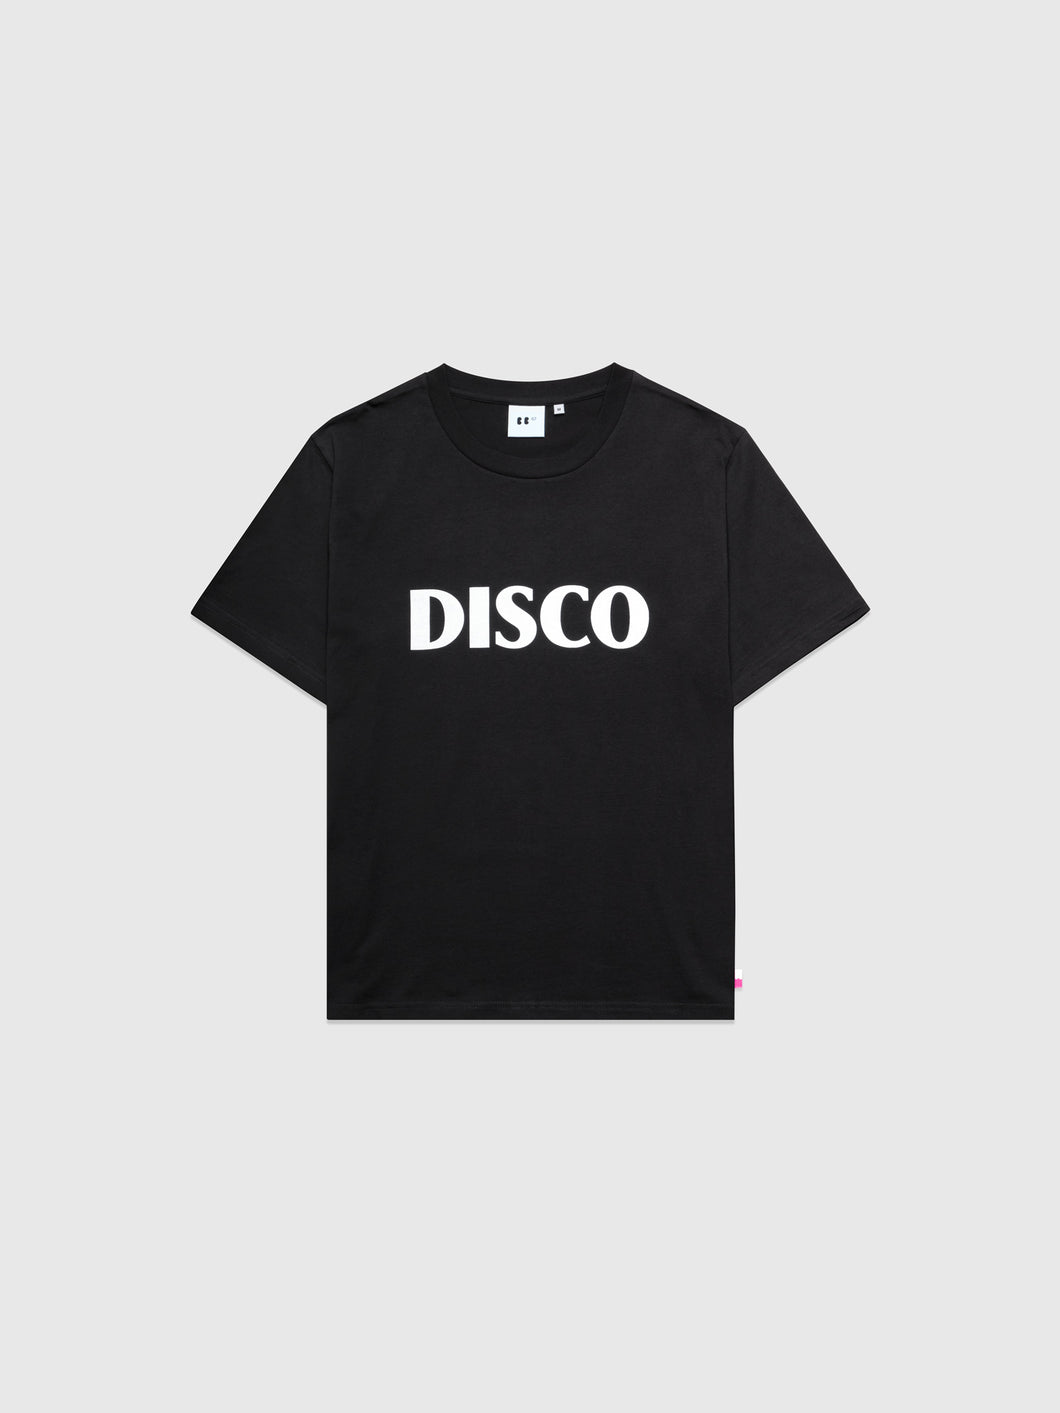 Disco T-Shirt Black Women